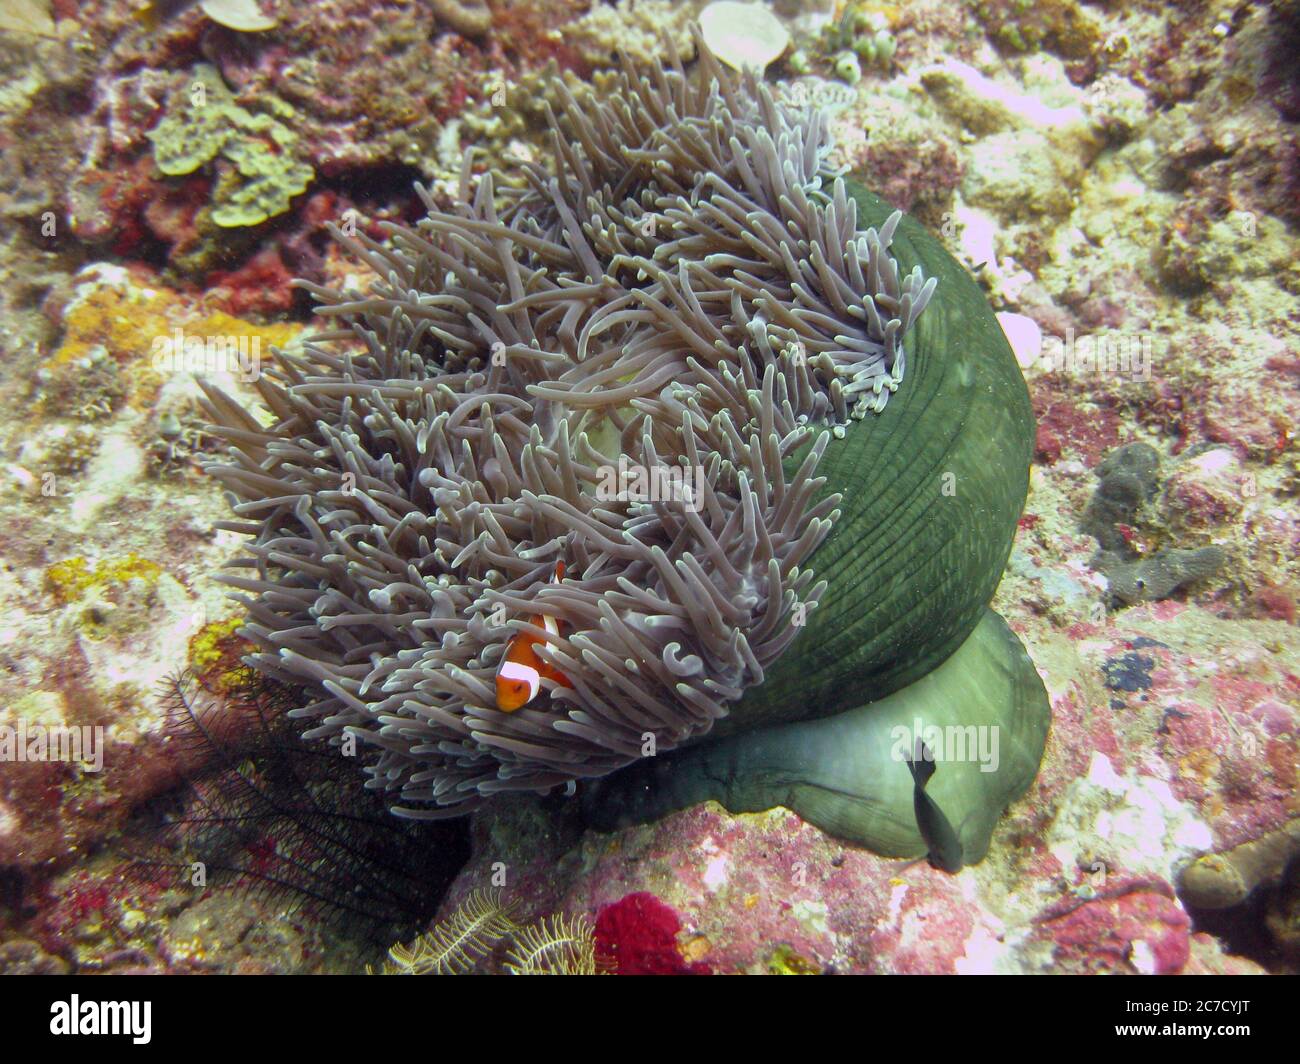 Colpo selettivo di closeup di un pesce pagliaccio tra grigio e verde barriere coralline Foto Stock